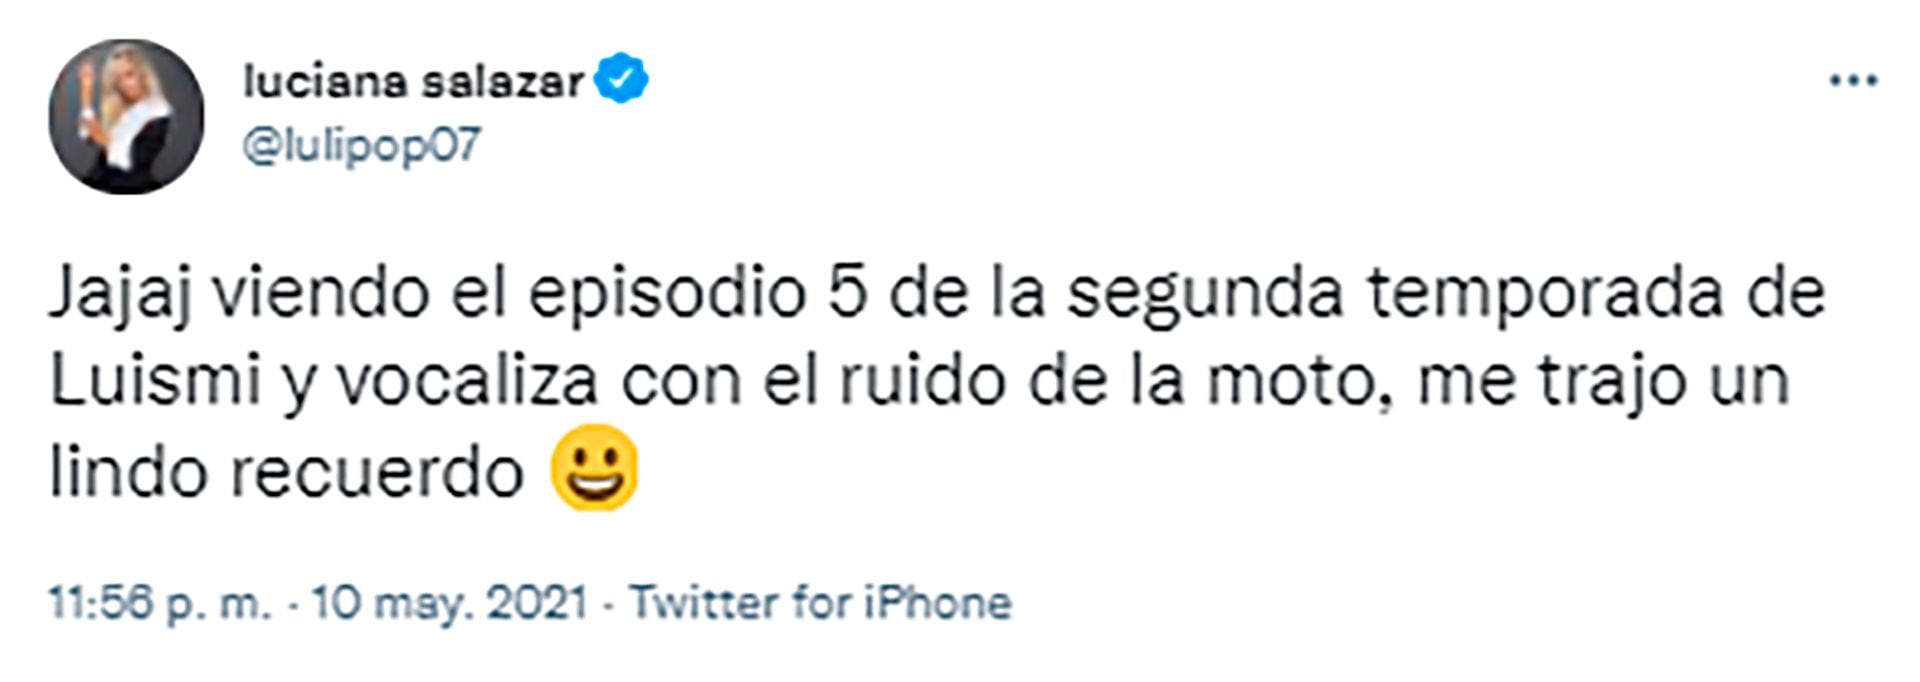 El tweet de Luciana Salazar sobre la serie de Luis Miguel